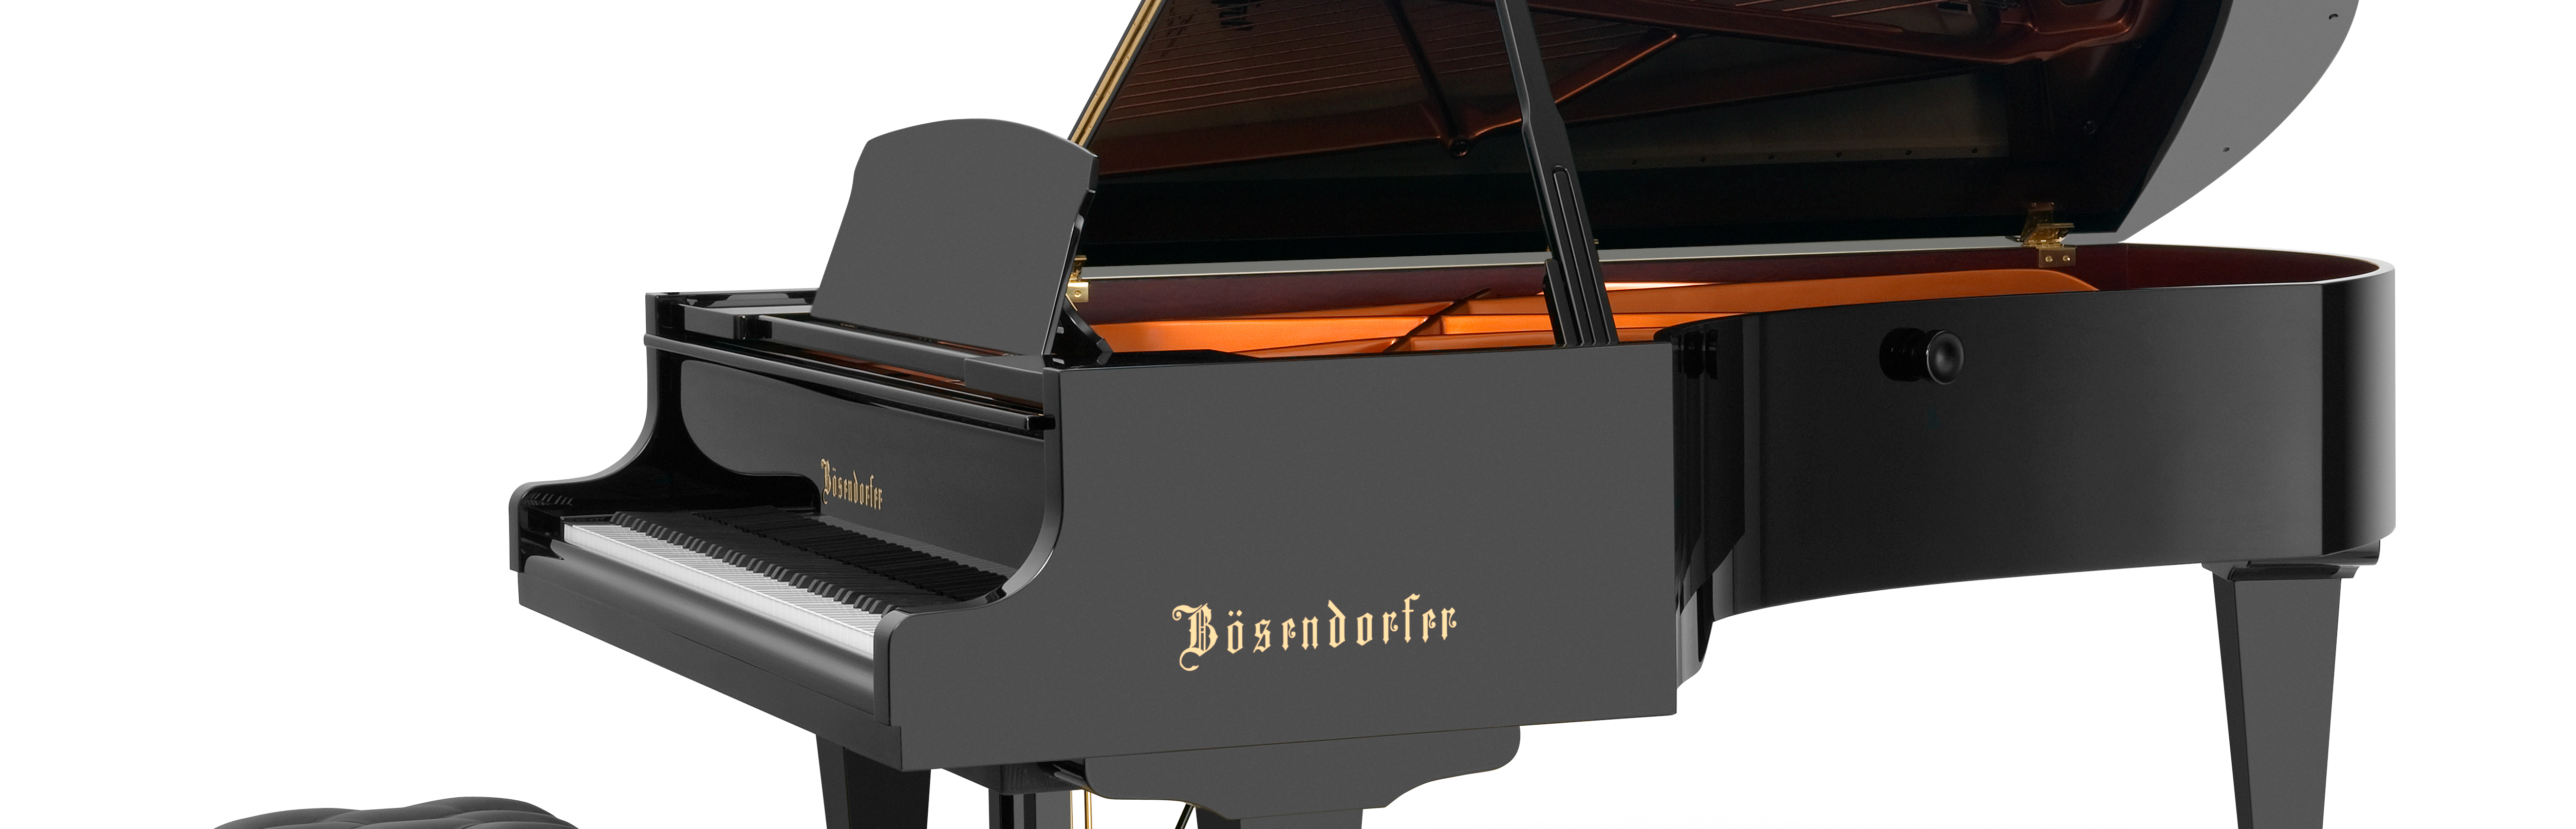 グランドピアノ 225 - Bösendorfer Grands and Uprights - Pianos ...